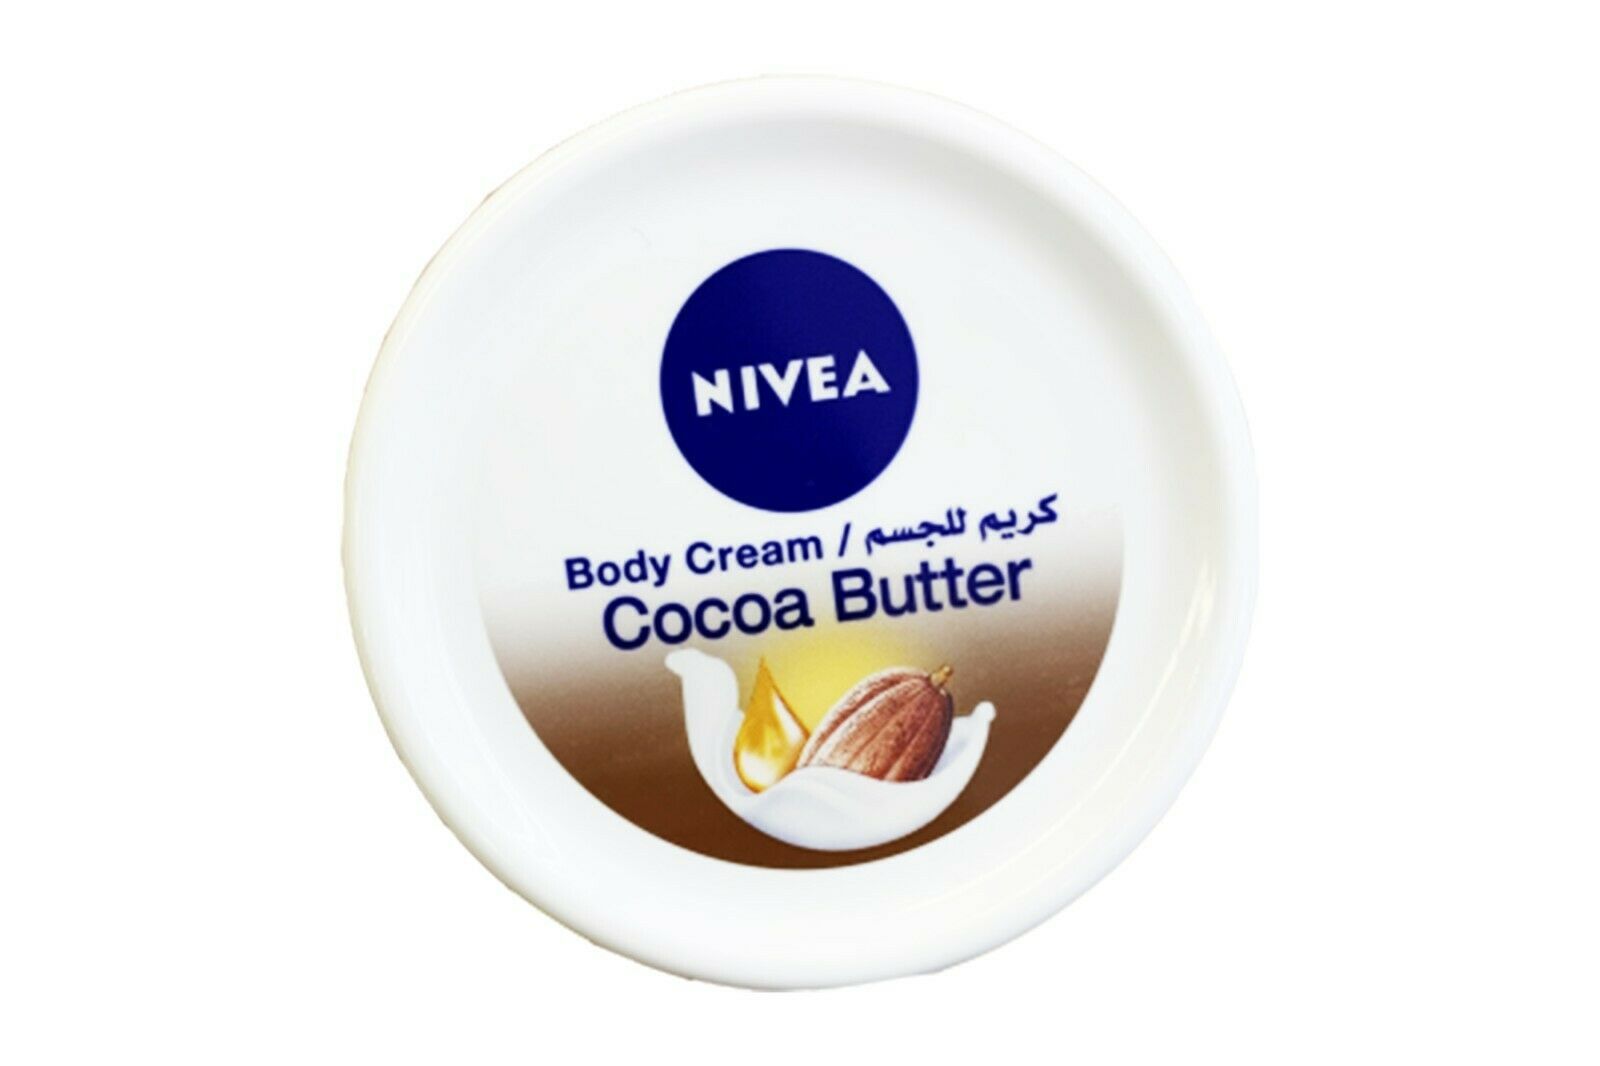 200ml. Nivea Body Cream Cocoa Butter Skin Cream Suitable for Dry Skin 6.67oz.